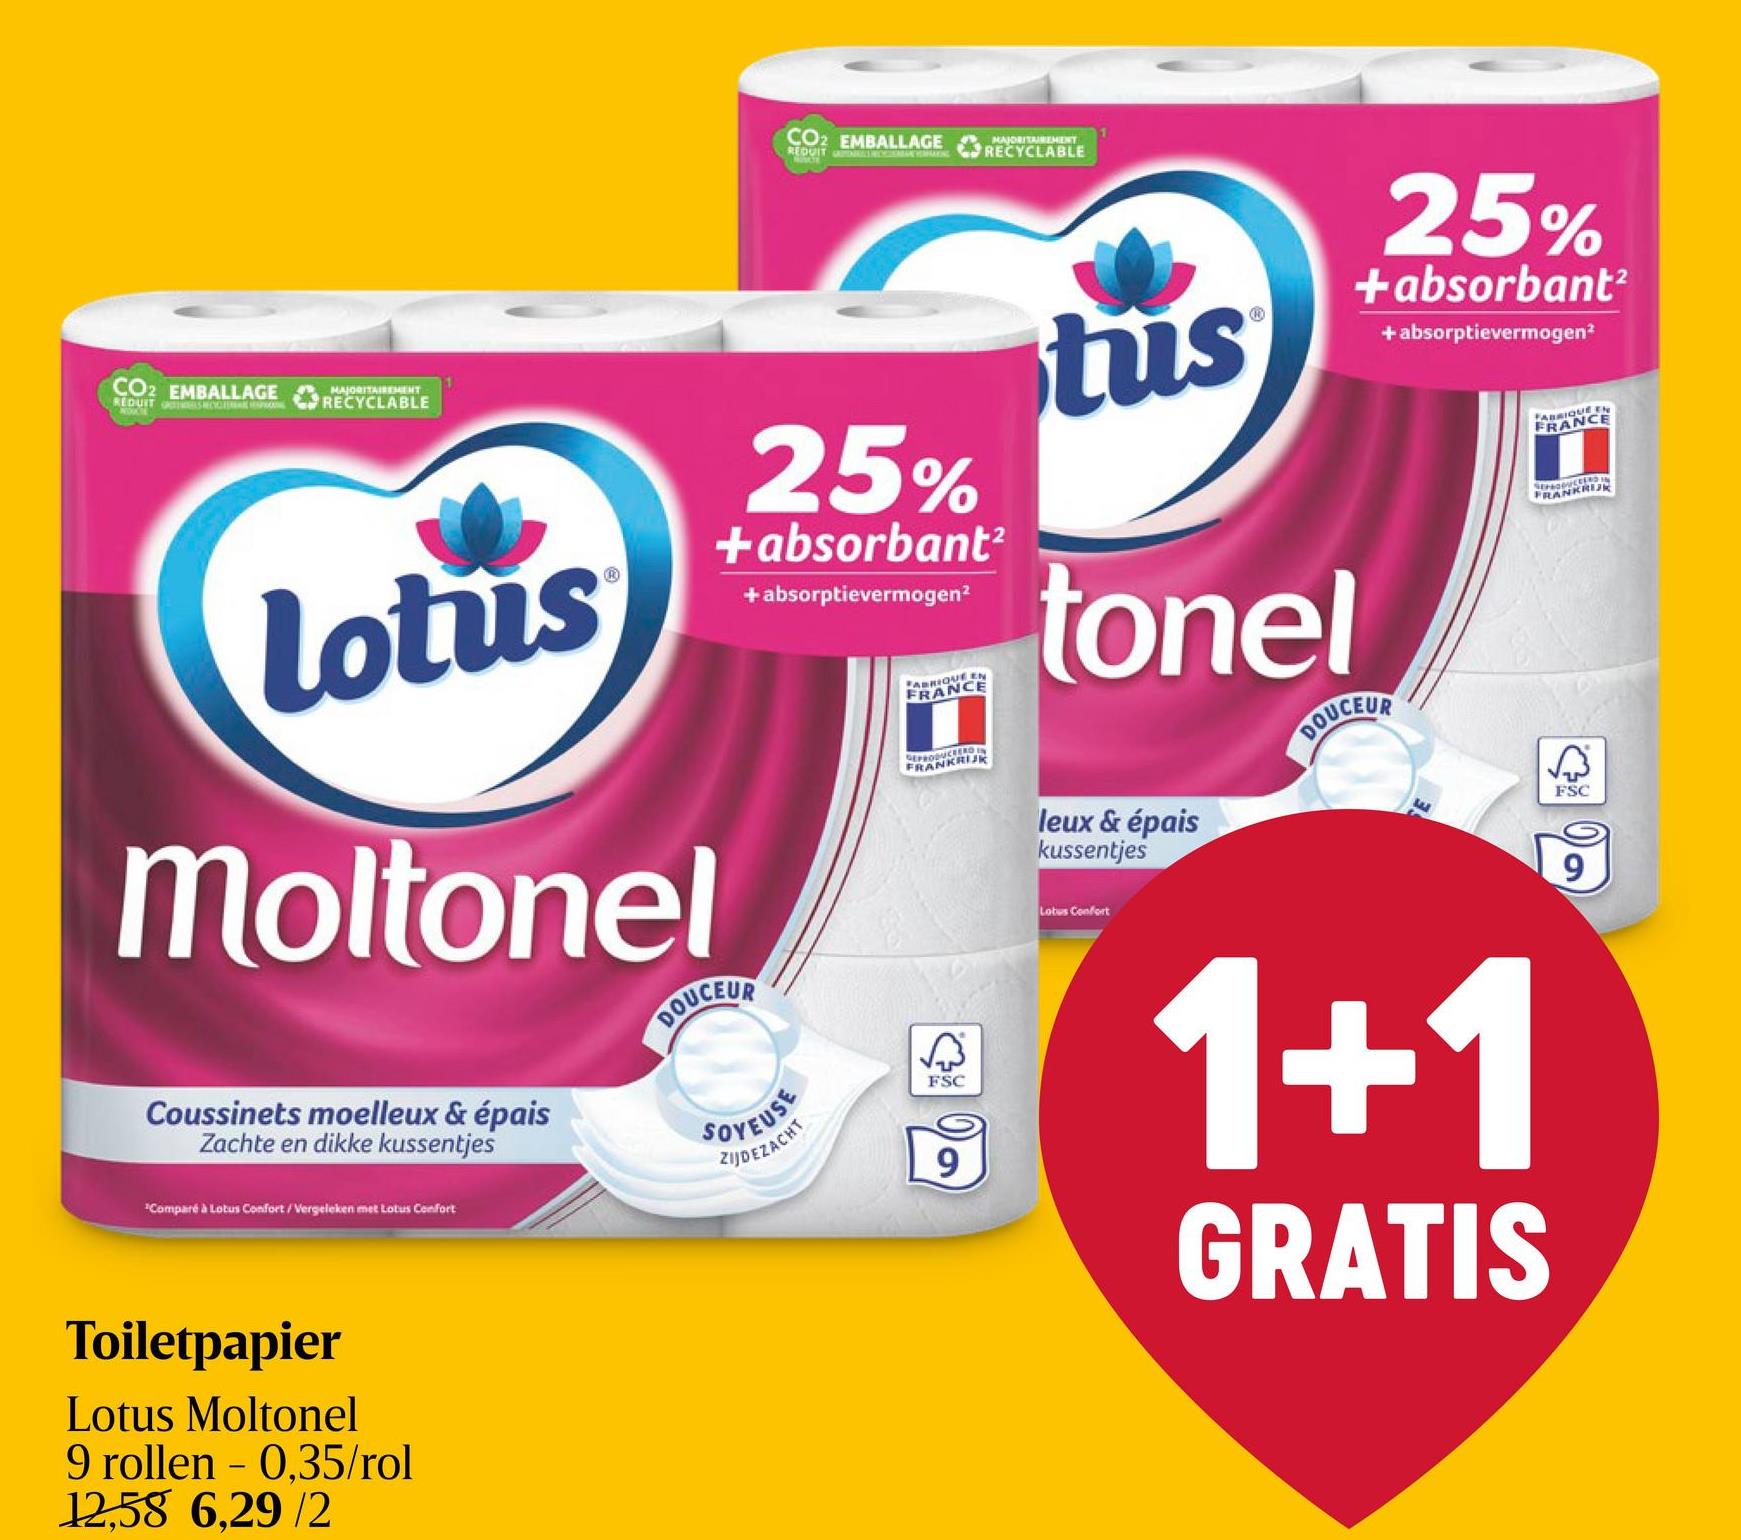 Toiletpapier | 3-Laags | Eco Lotus Moltonel is een 3-laags, zacht, sterk en absorberend toiletpapier